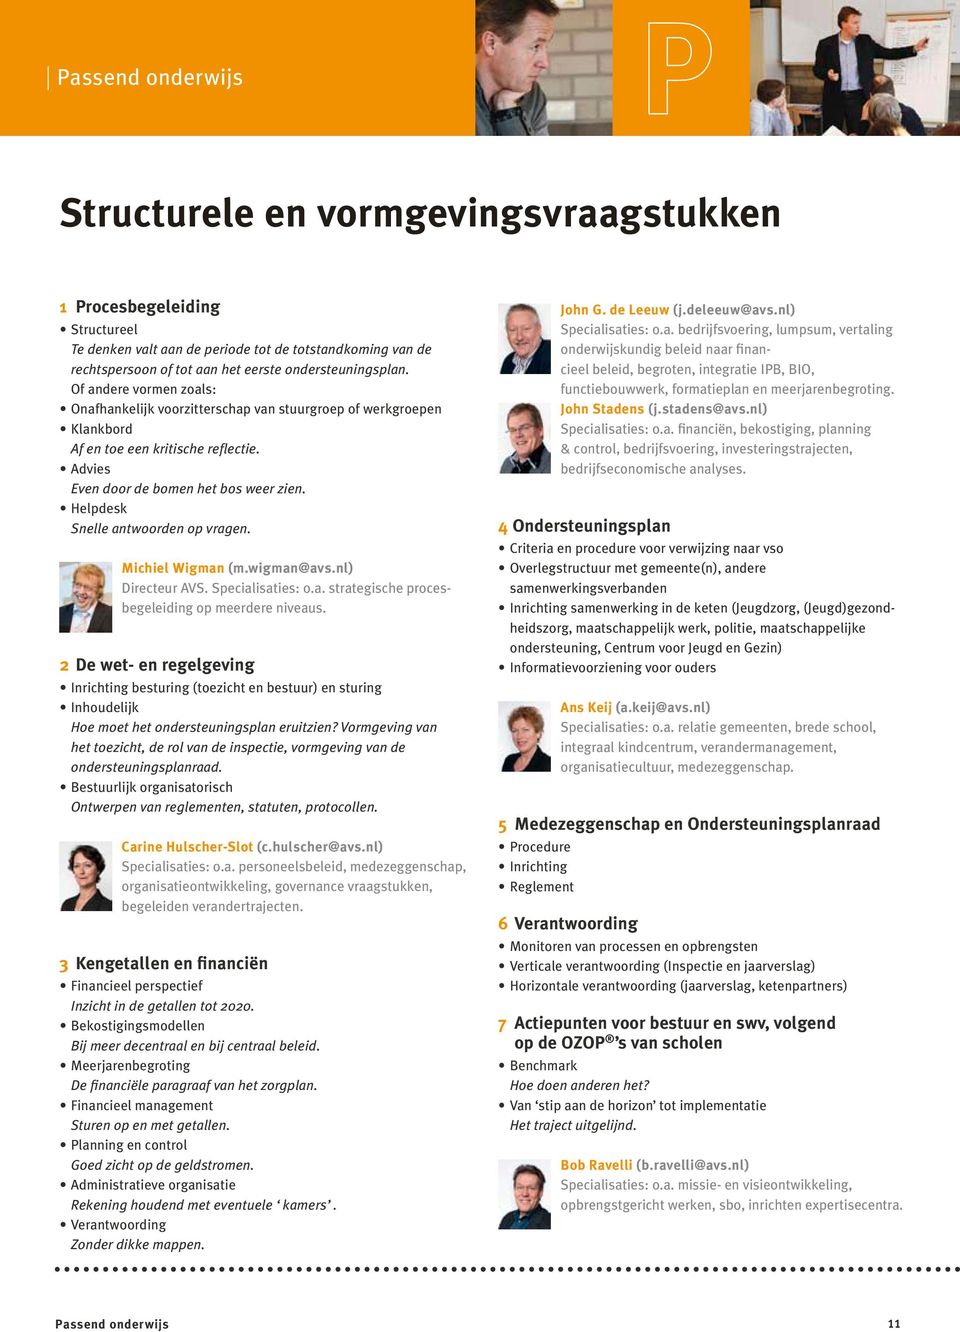 Helpdesk Snelle antwoorden op vragen. Michiel Wigman (m.wigman@avs.nl) Directeur AVS. Specialisaties: o.a. strategische procesbegeleiding op meerdere niveaus.